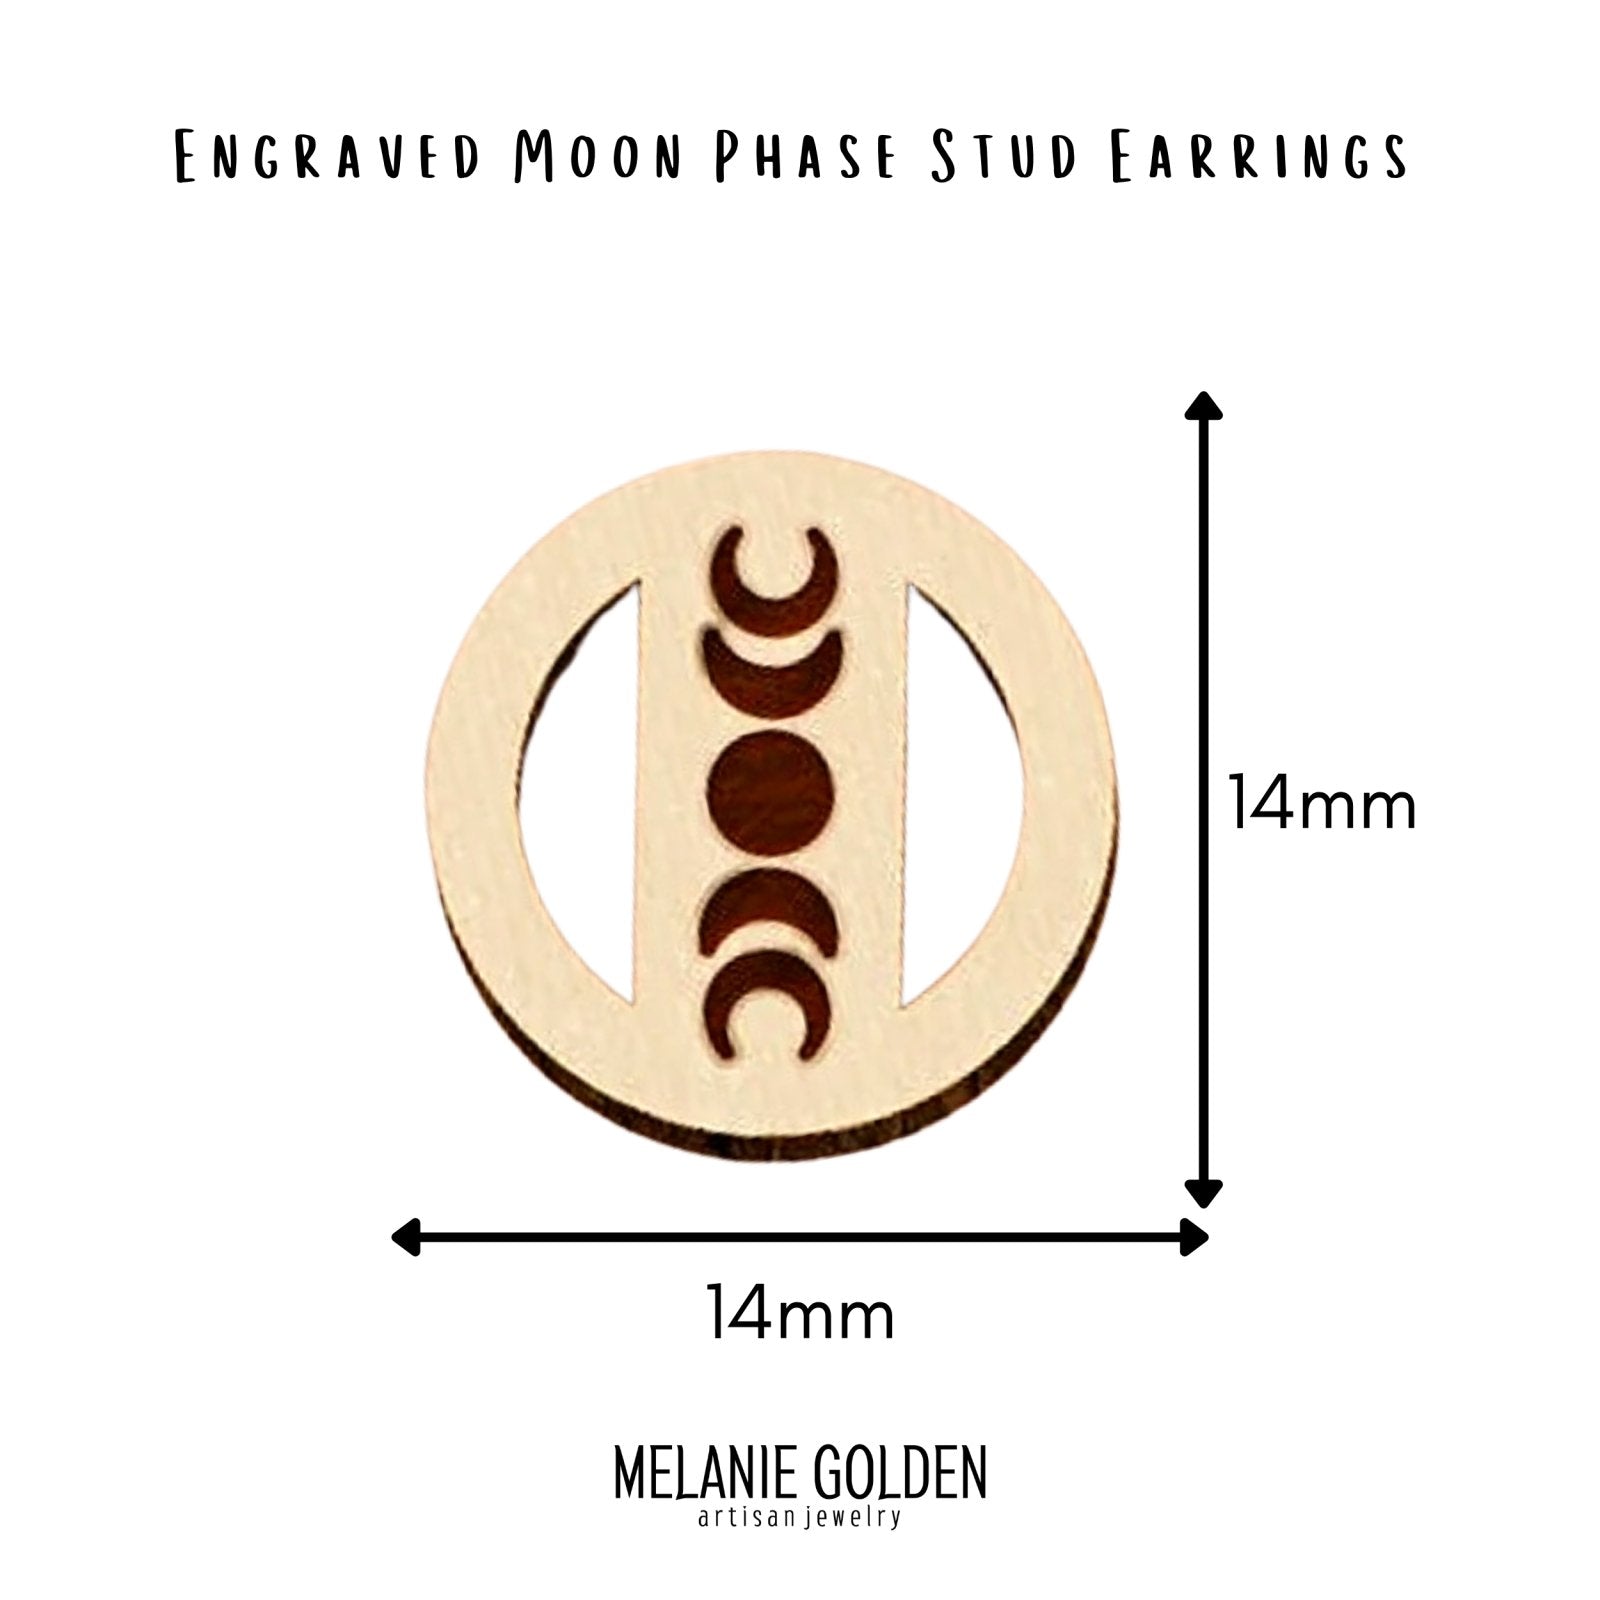 Wood Moon Phase Earrings - Melanie Golden Jewelry - earrings, stud, stud earrings